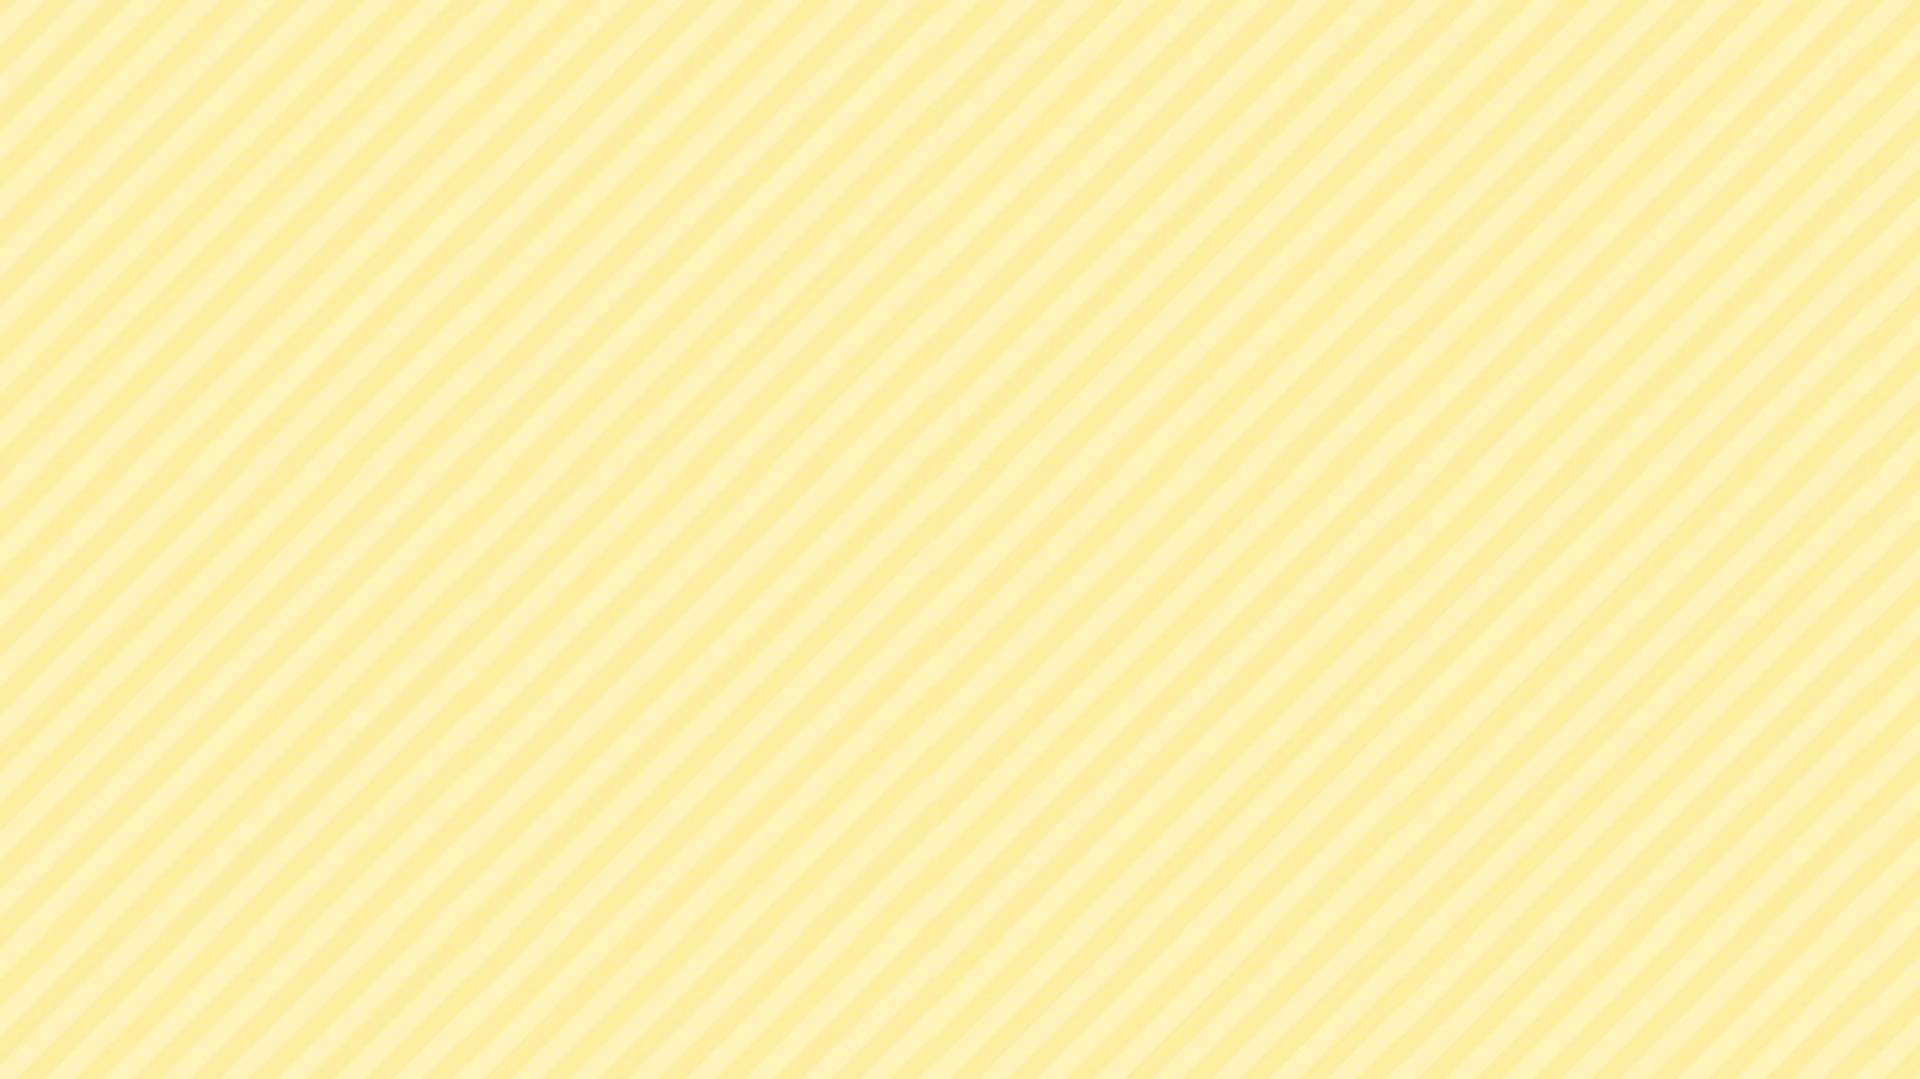 Pastel Yellow Seamless Diagonal Stripes Background